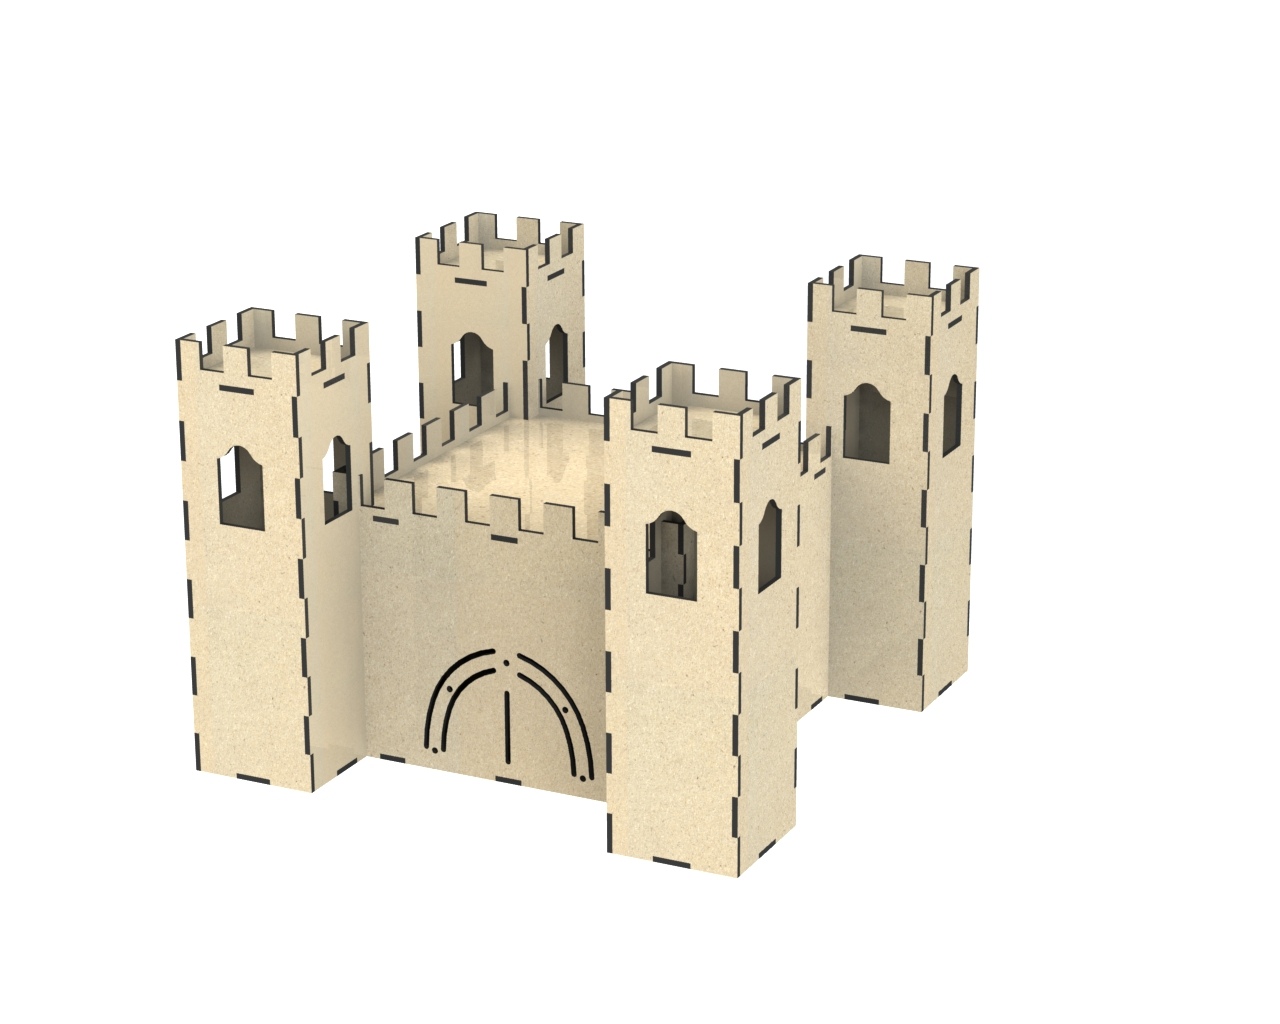 Castle For Laser Cut Free CDR Vectors Art